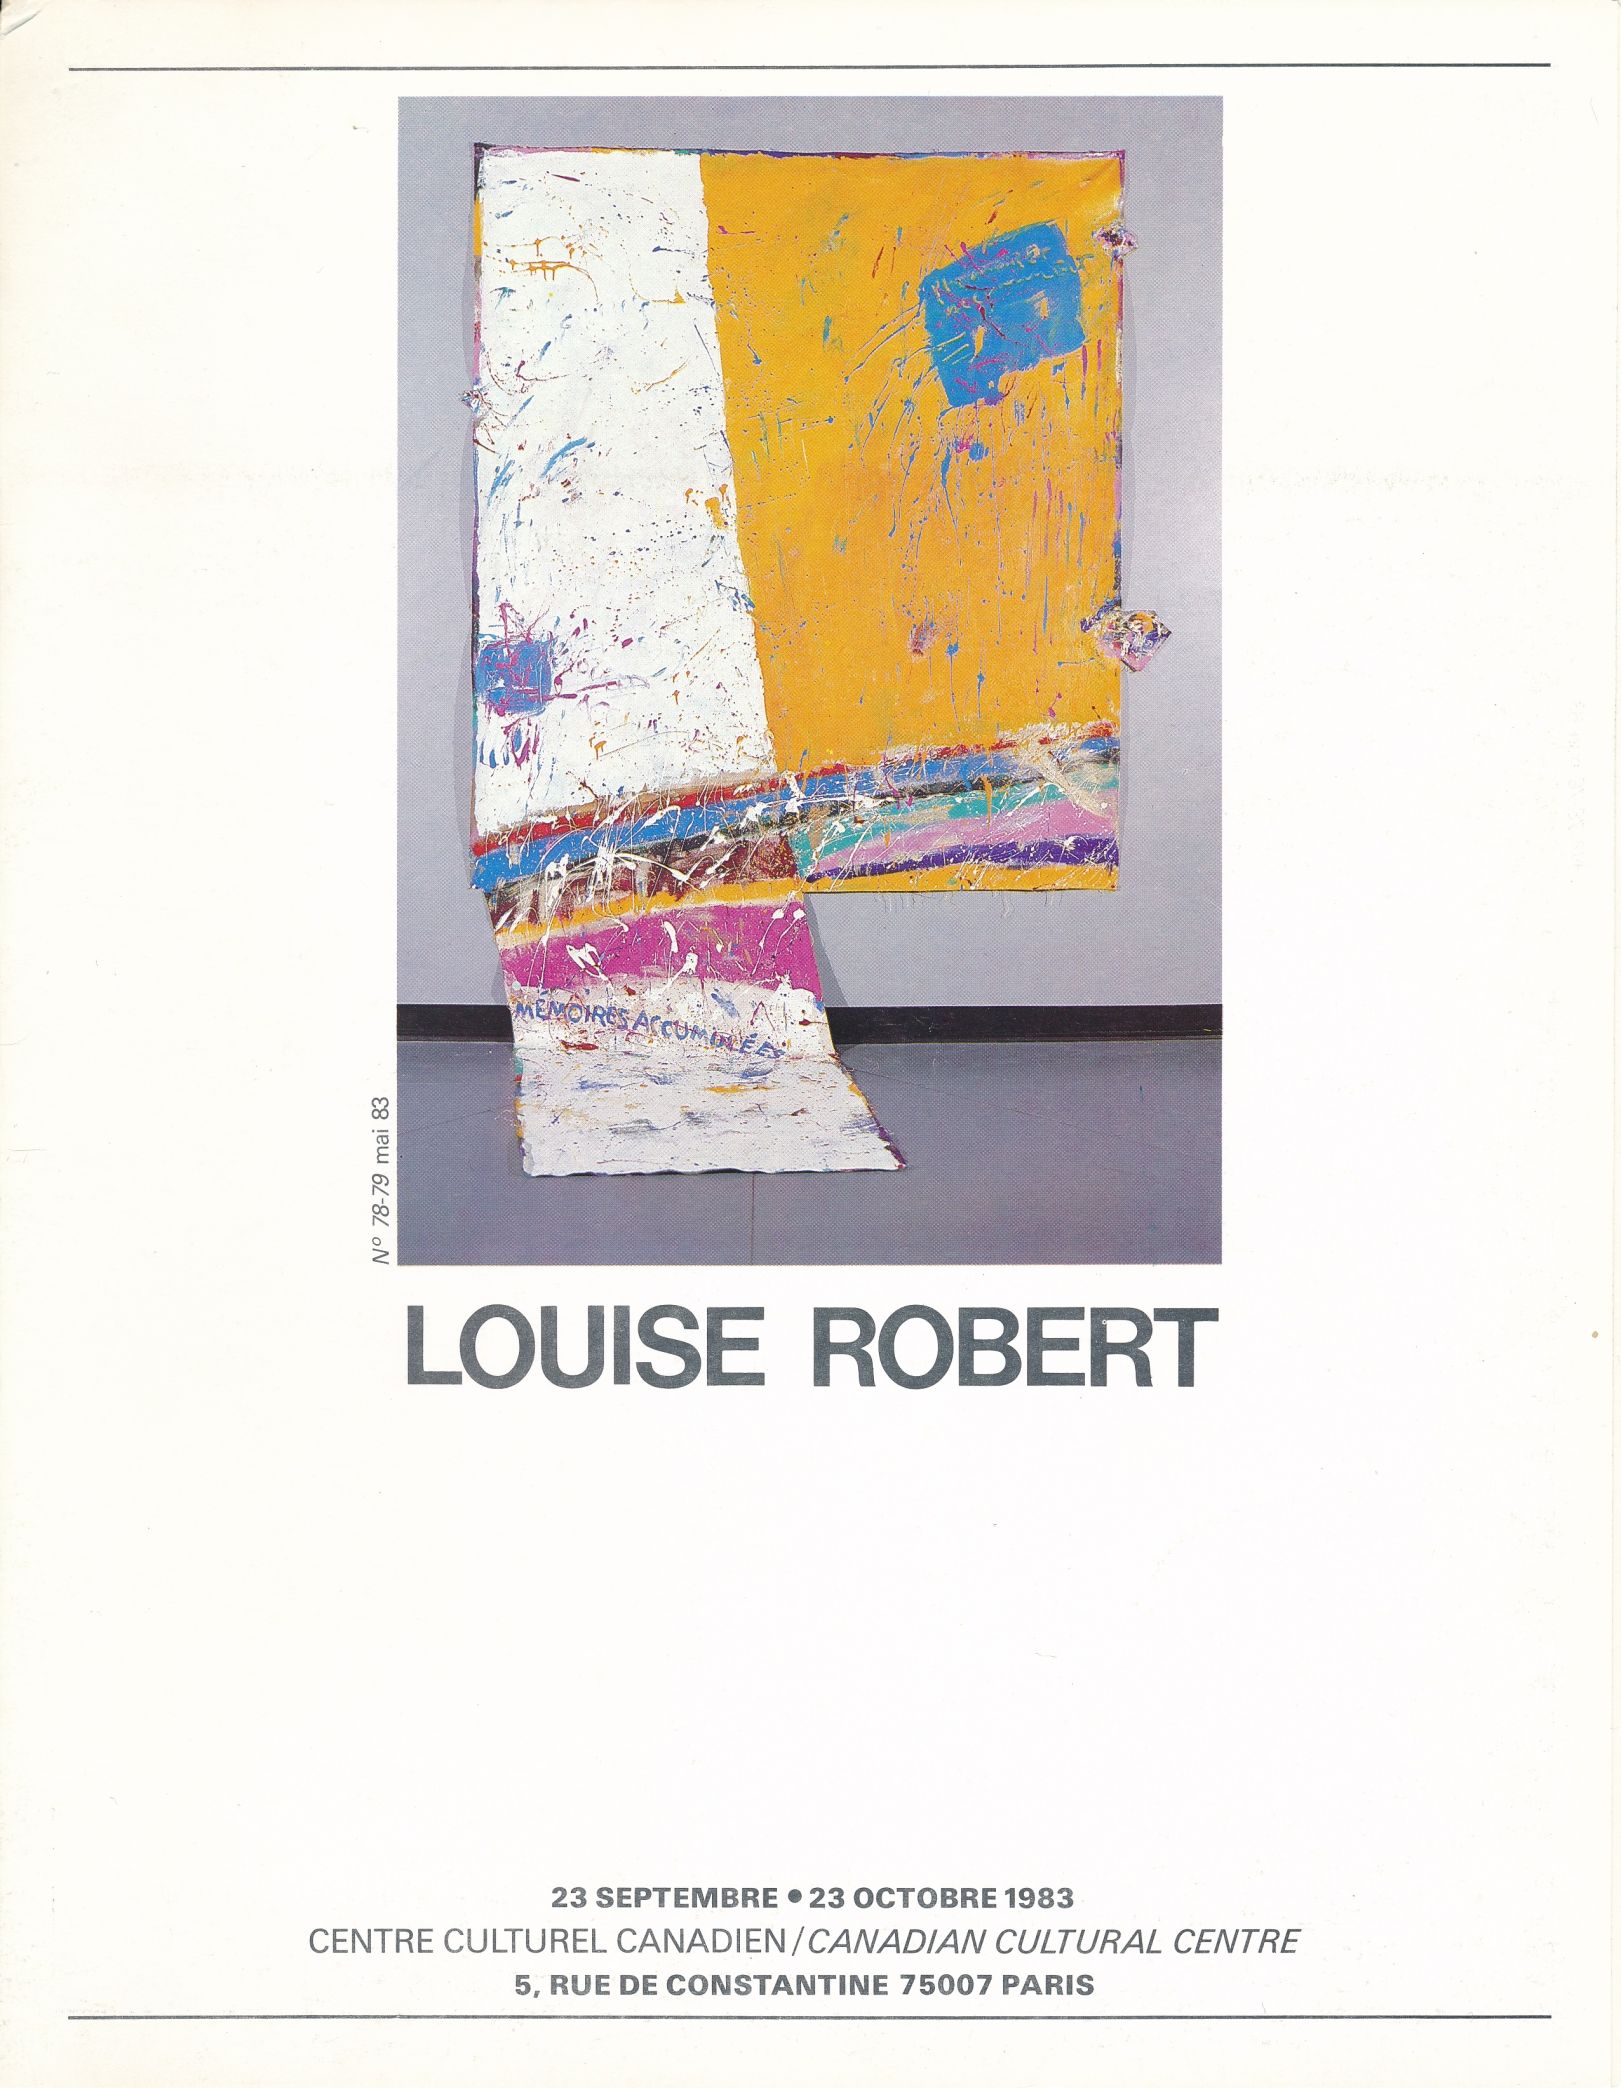 Couverture de l’opuscule de l’exposition Louise Robert au Centre culturel canadien à Paris, 1983. Texte de René PAYANT, « L’excès ».